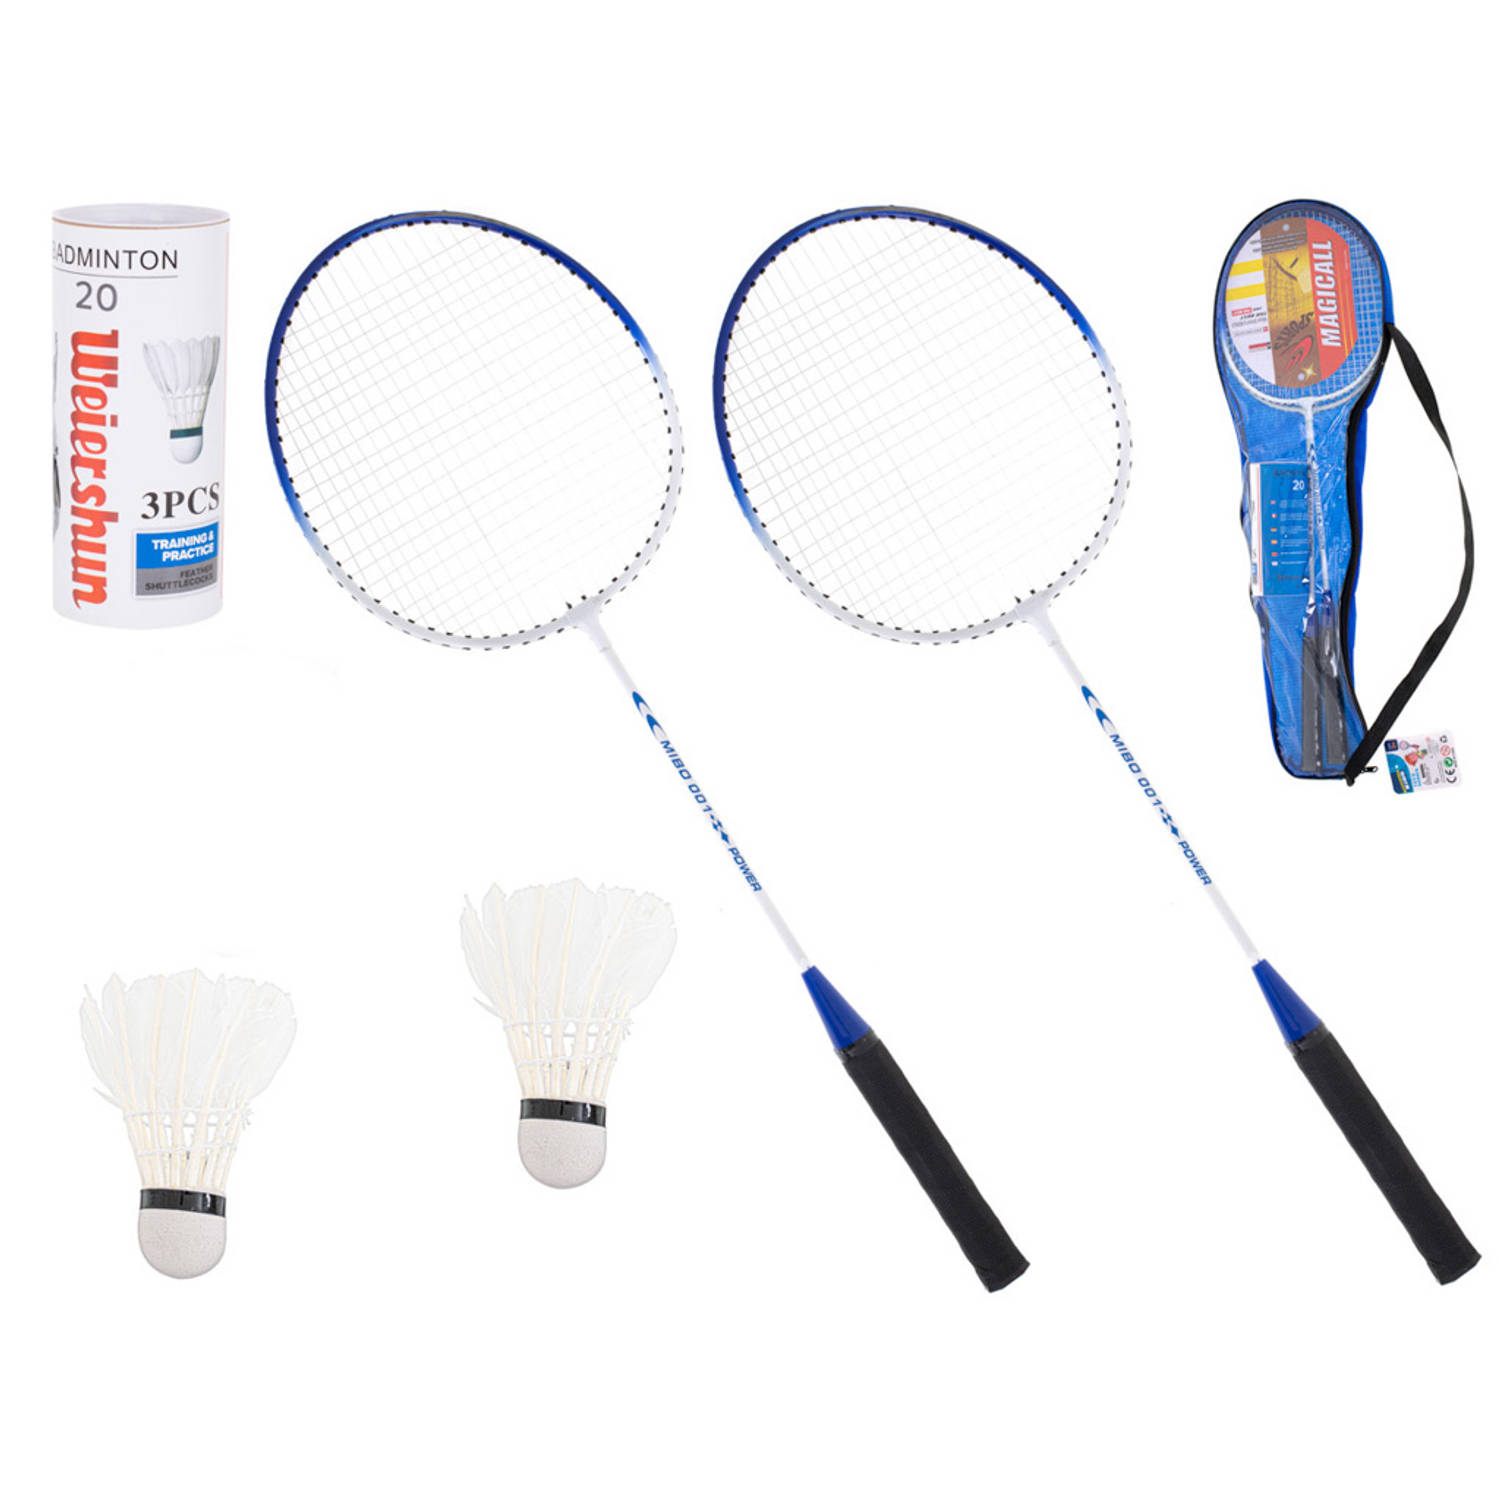 Badmintonrackets in handige tas met handvat - 2 stuks - Inclusief 2 shuttles